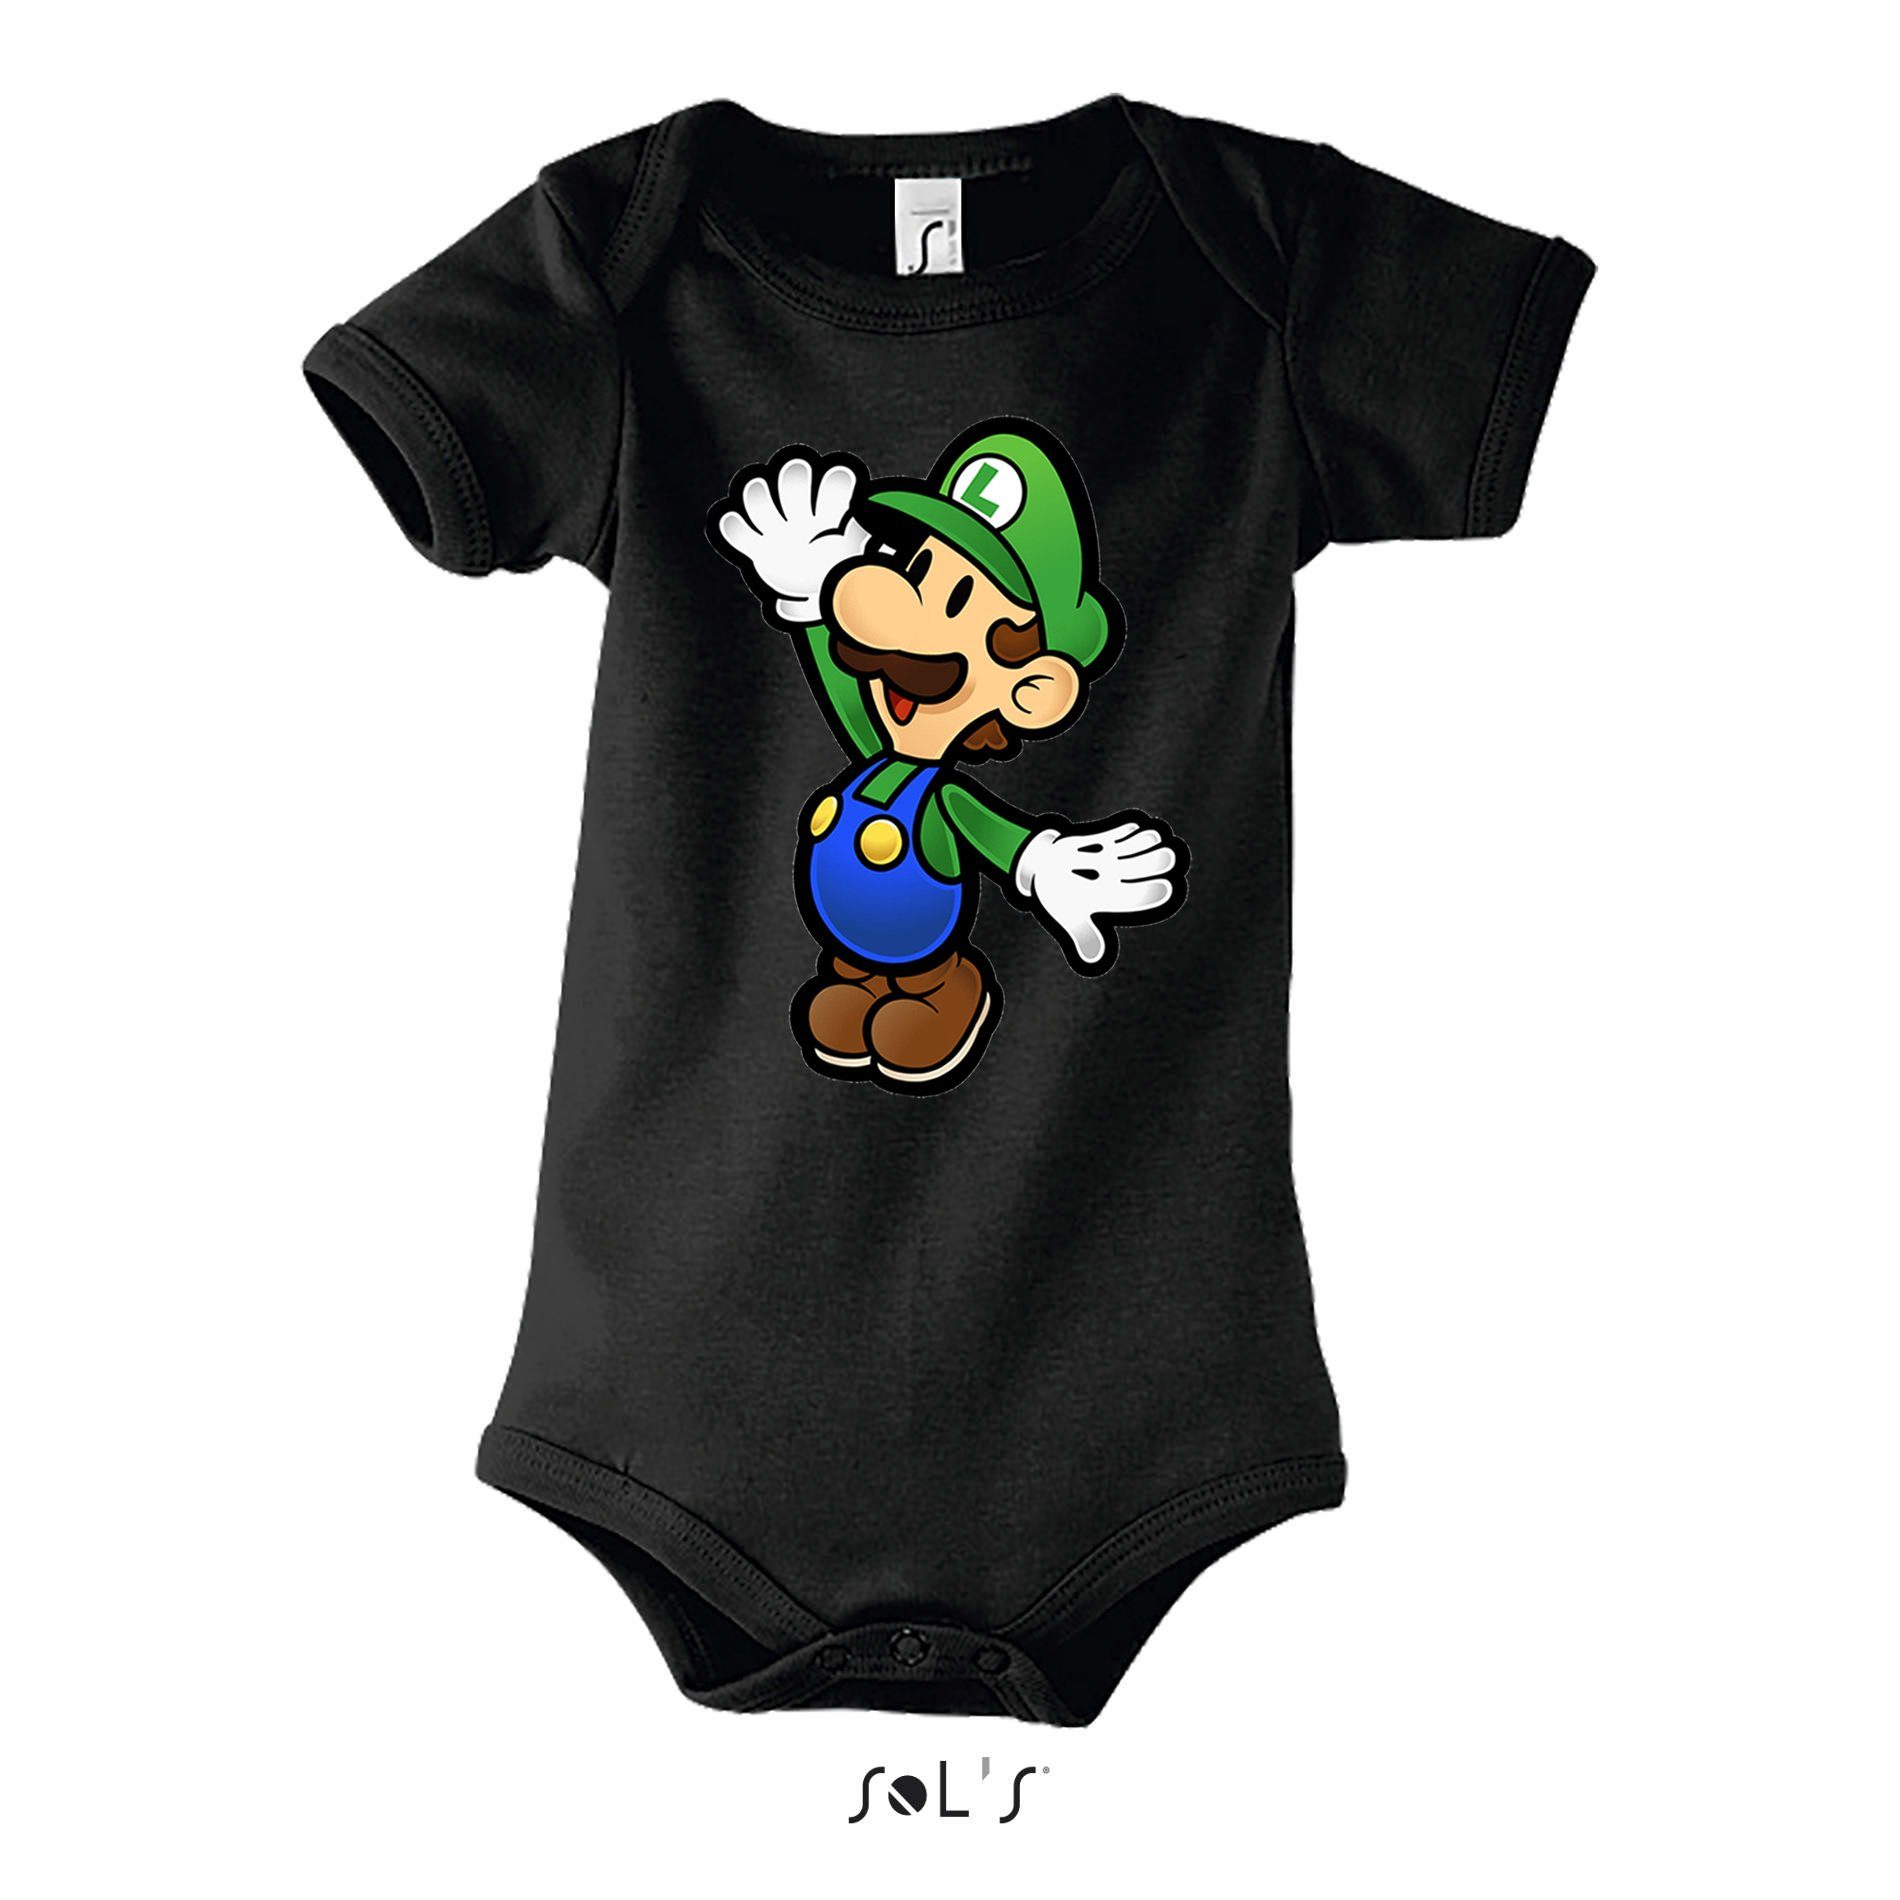 & Peach Nintendo Yoshi Mario Blondie Schwarz Kinder Luigi Gaming Strampler Brownie mit Druckknopf Baby